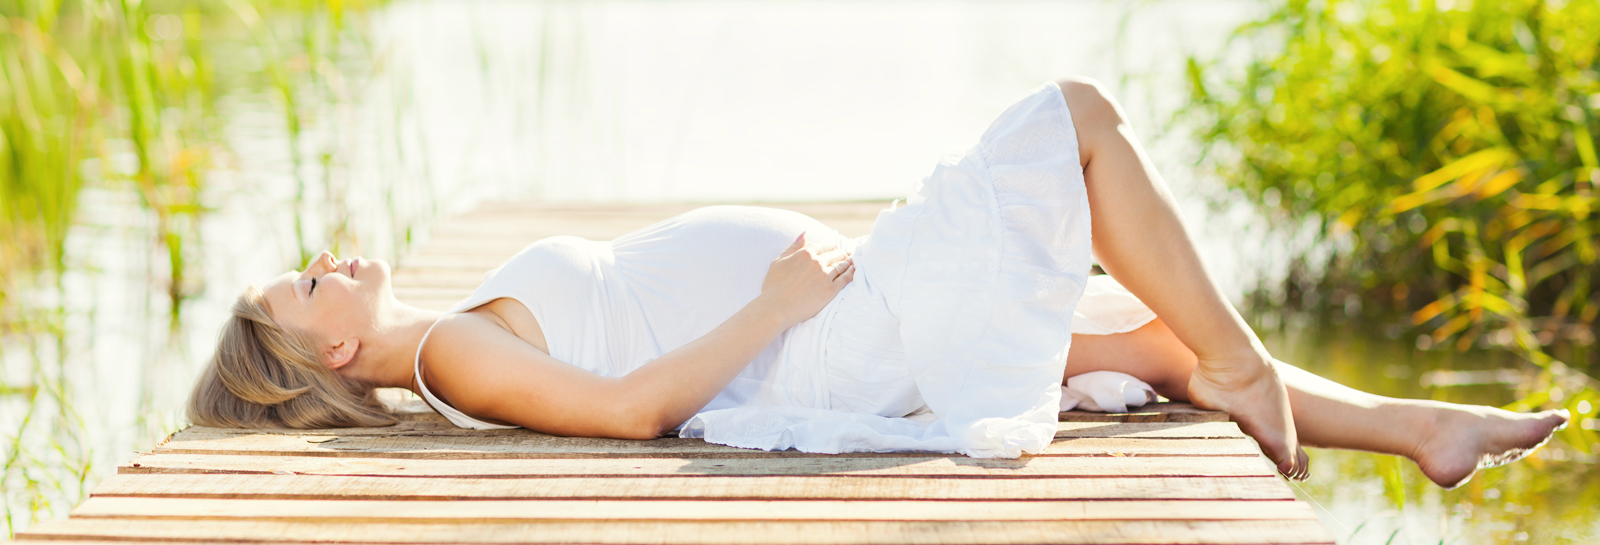 Femme enceinte soleil vitamine D grossesse